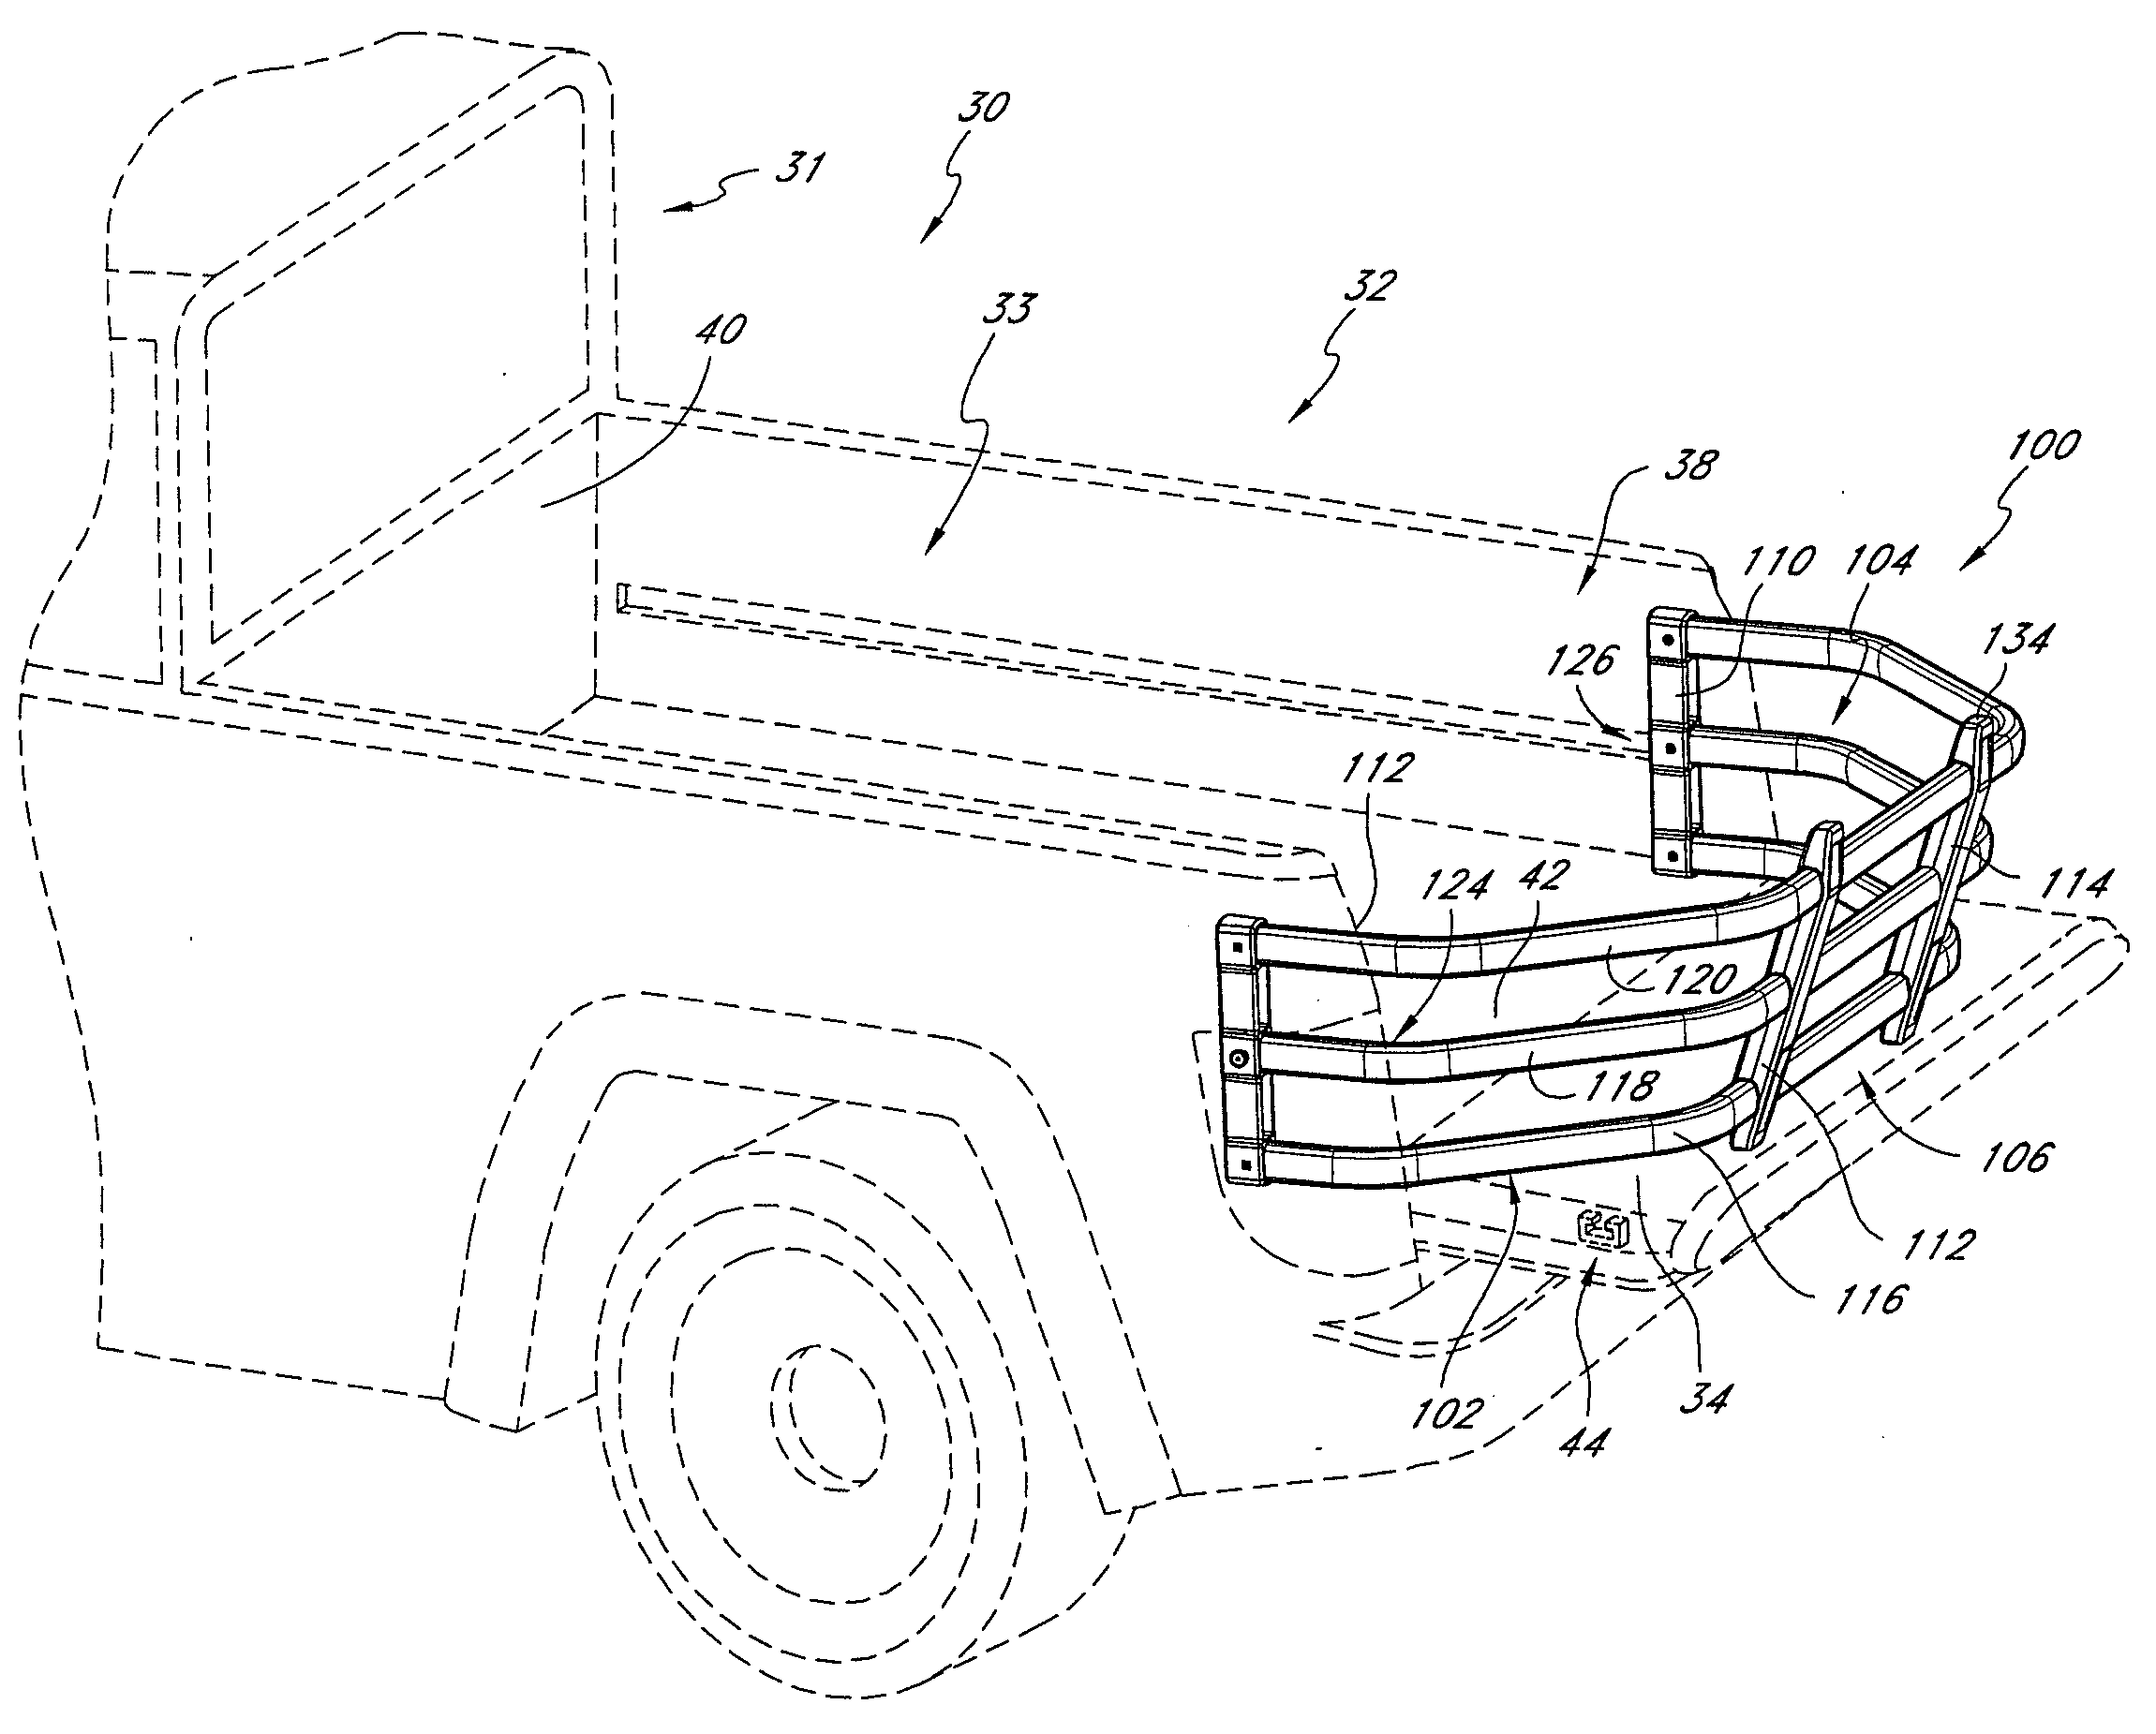 Vehicle cargo tailgate enclosure